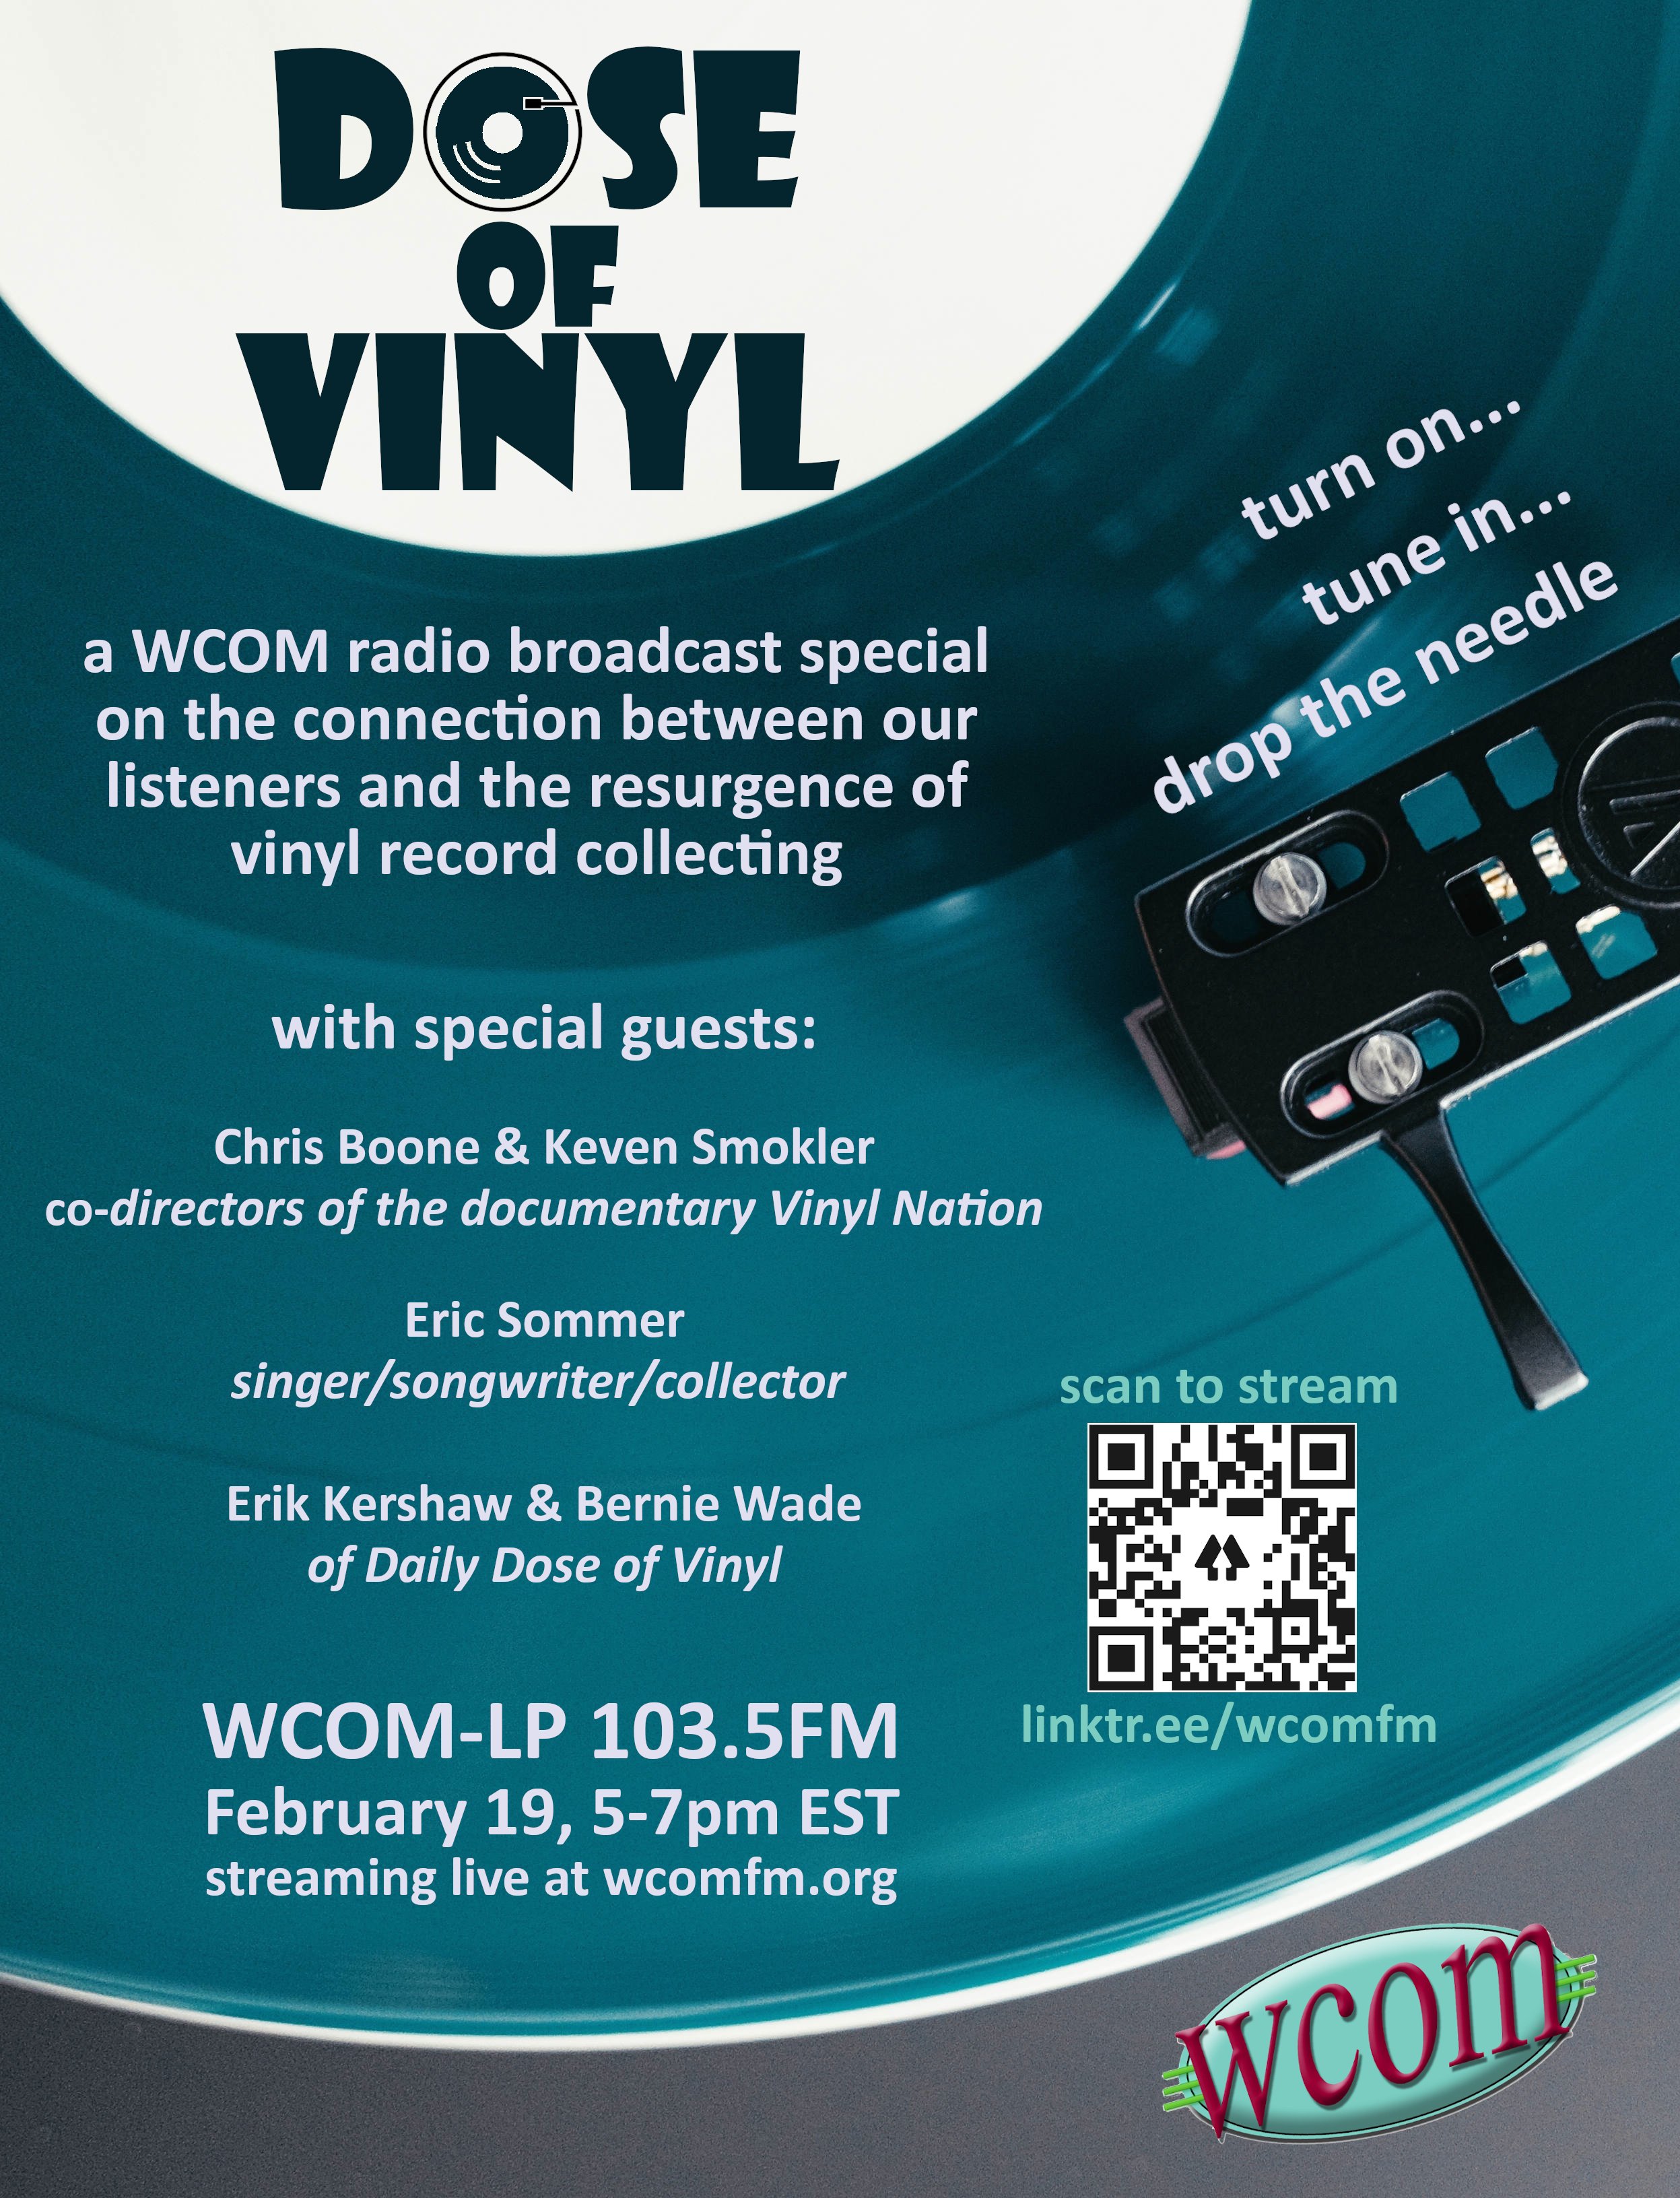 WCOM-LP - WCOM 103.5 FM Radio – Listen Live & Stream Online